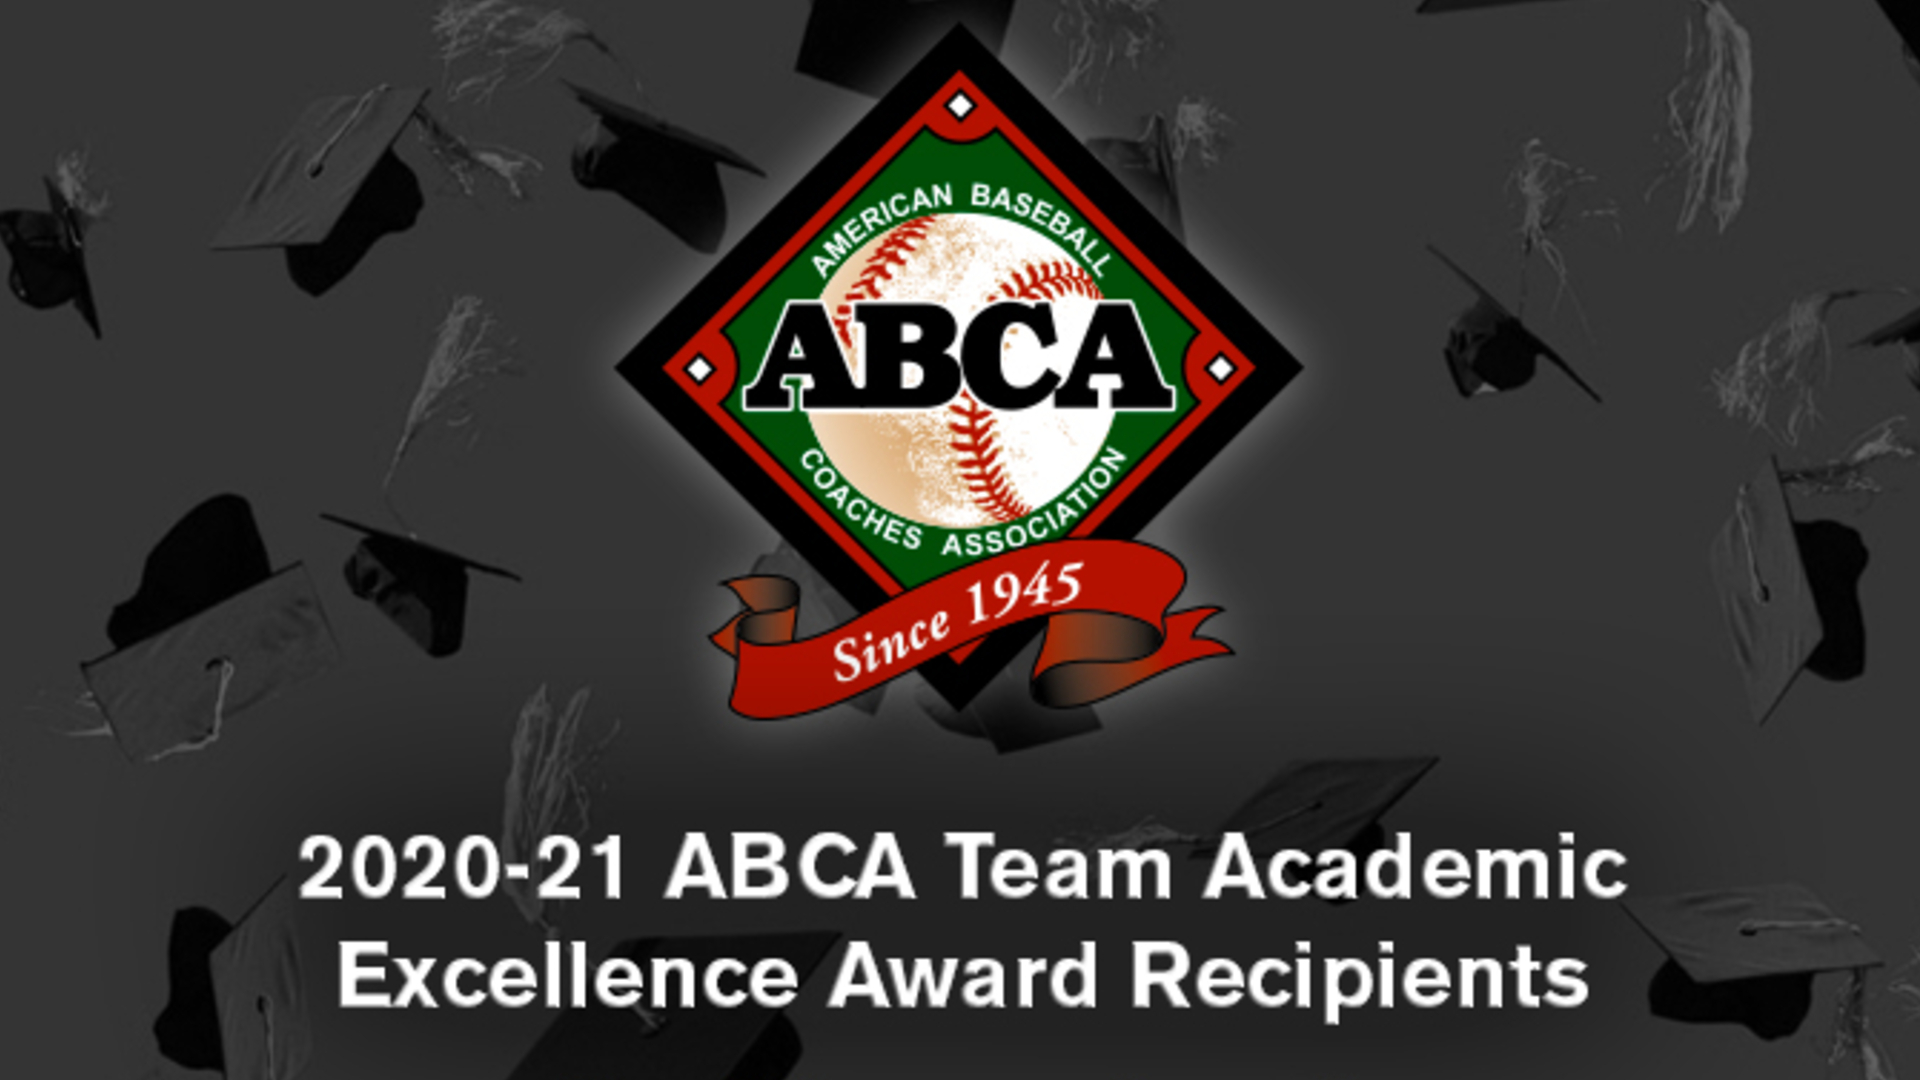 UD Baseball Earns ABCA Team Academic Excellence Award